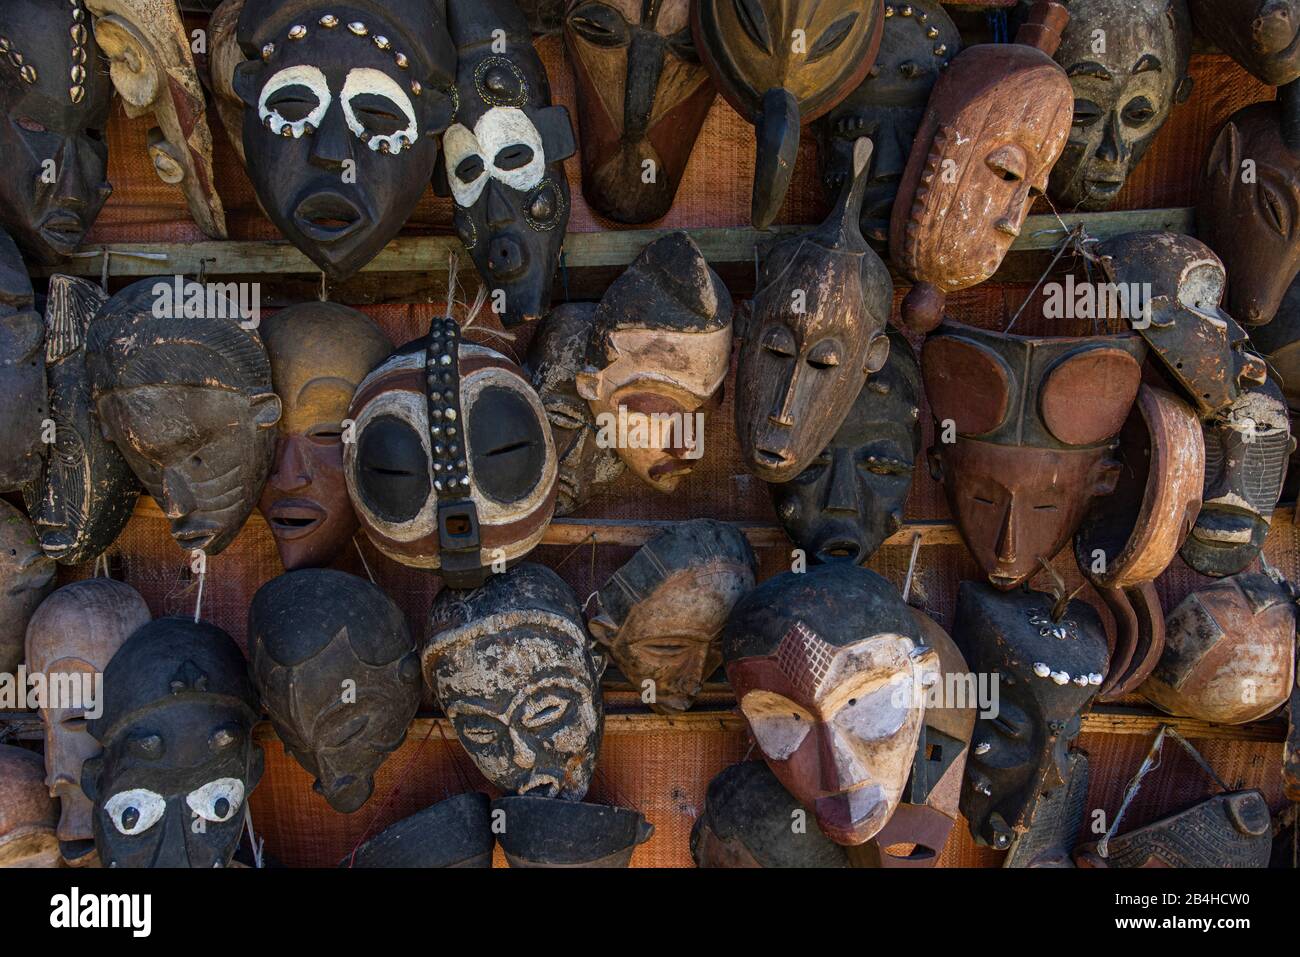 Destination Tansania, Insel Sansibar: Impressionen aus Stone Town, dem ältesten Teil der Stadt Sansibar. Holzmaskensammlung auf einem Markt Stockfoto